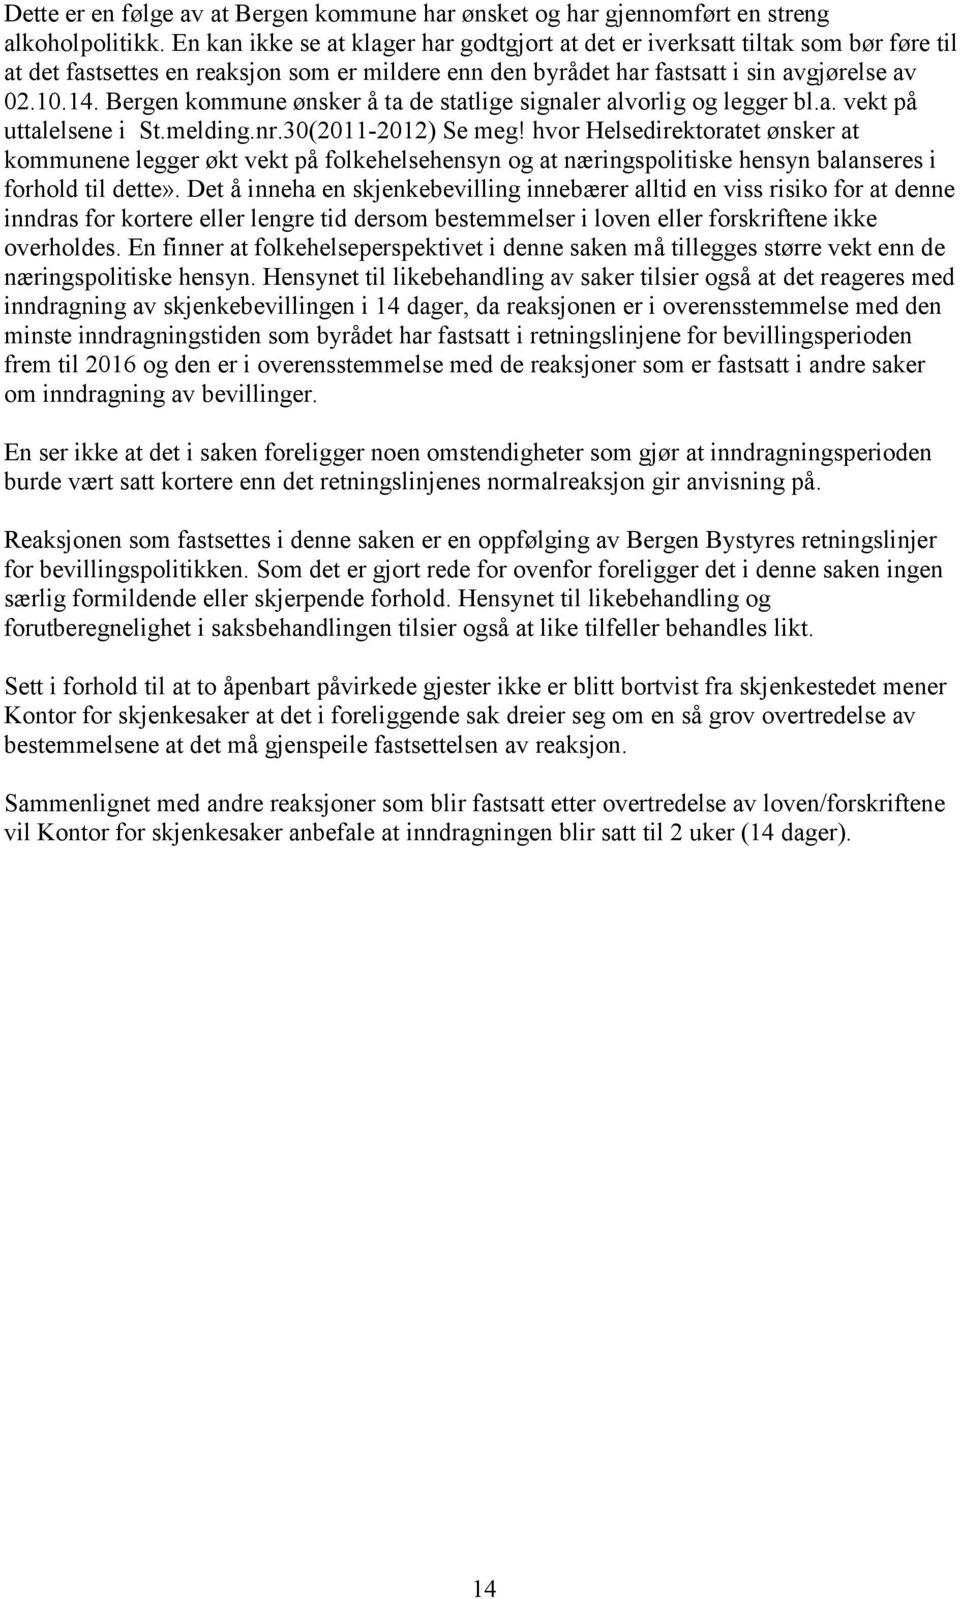 Bergen kommune ønsker å ta de statlige signaler alvorlig og legger bl.a. vekt på uttalelsene i St.melding.nr.30(2011-2012) Se meg!